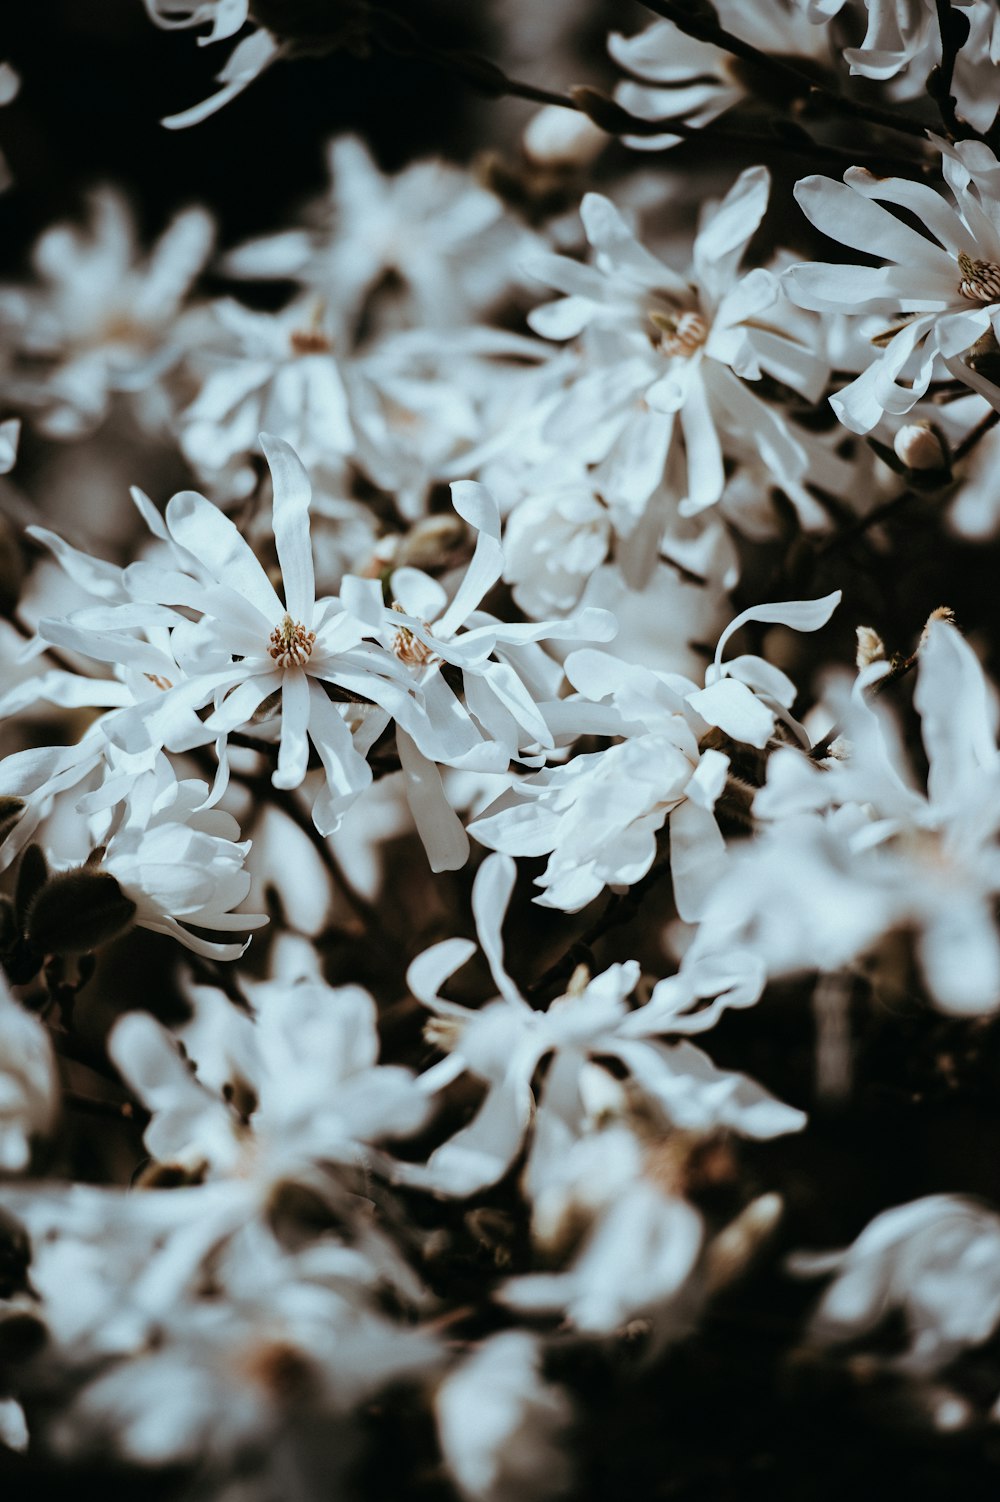 Fotografia de foco raso de flores brancas